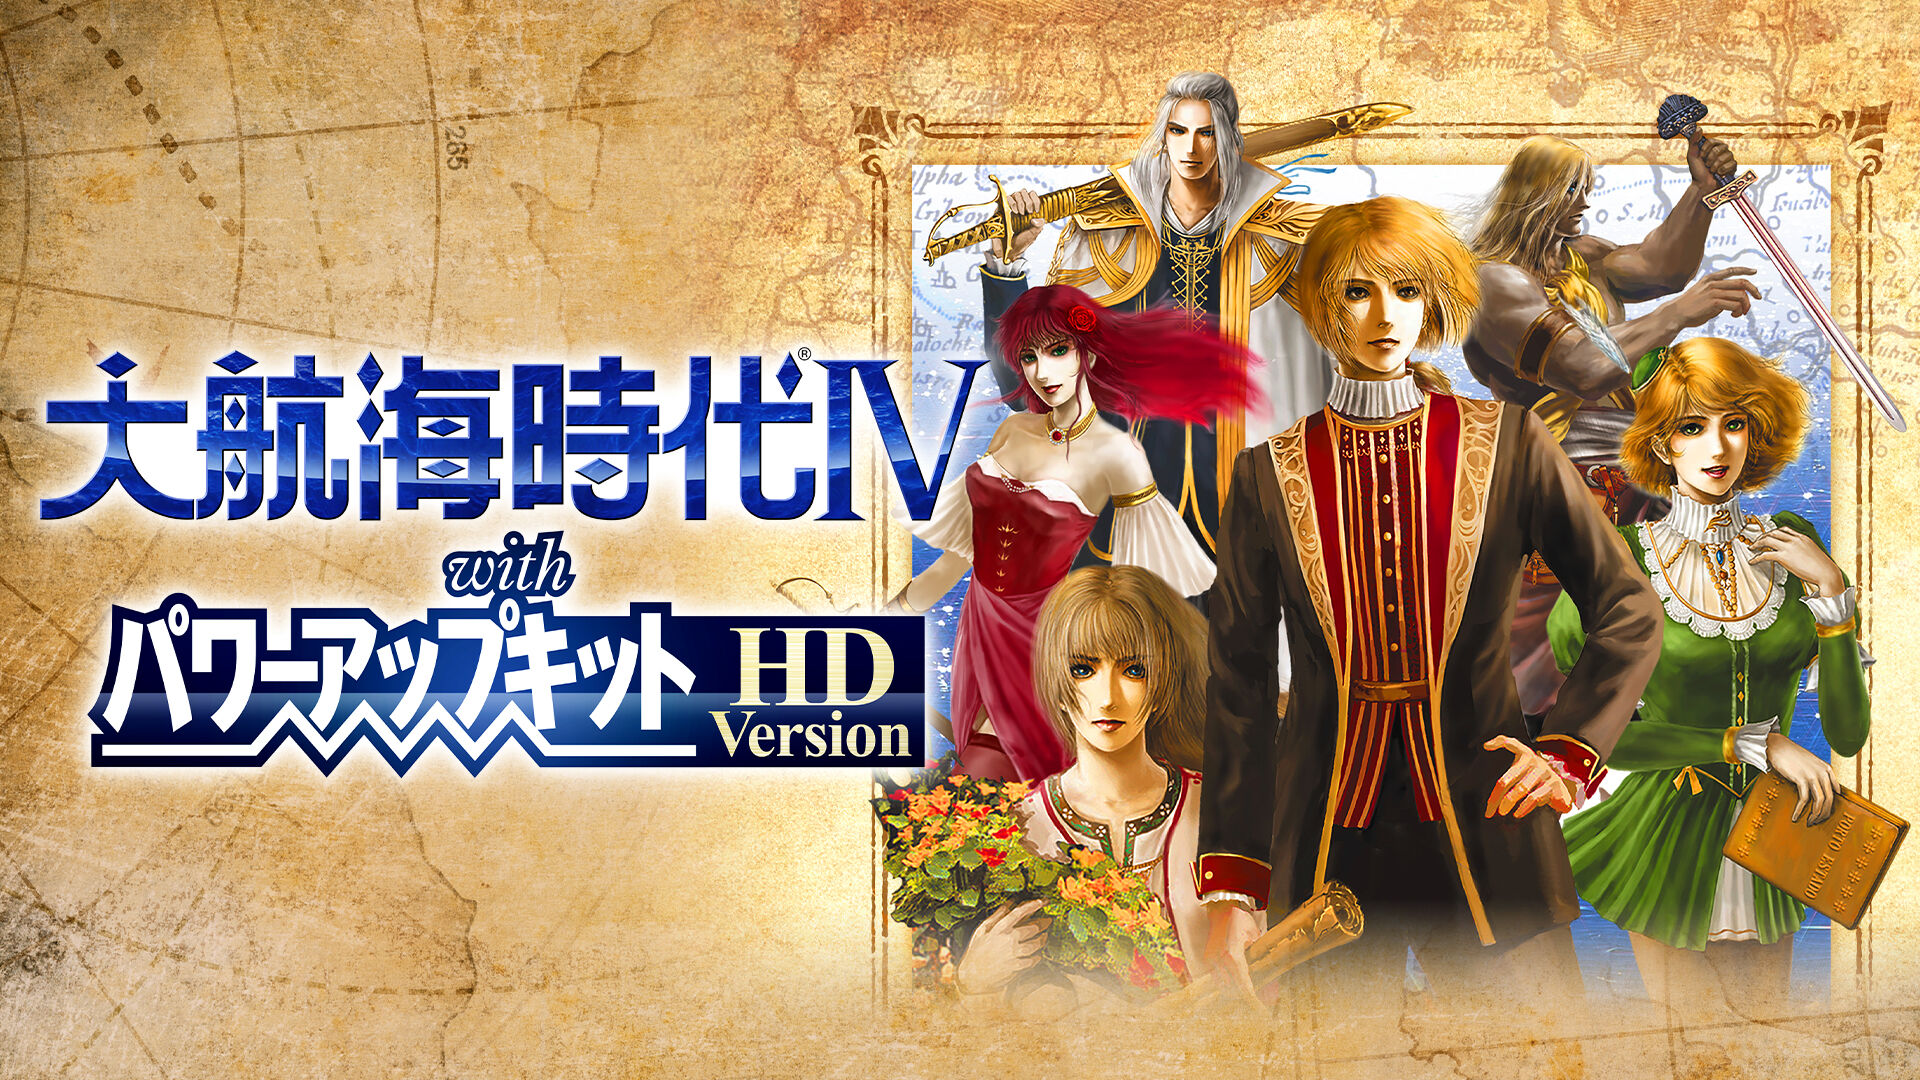 大航海時代Ⅳ with パワーアップキット HD Version ダウンロード版